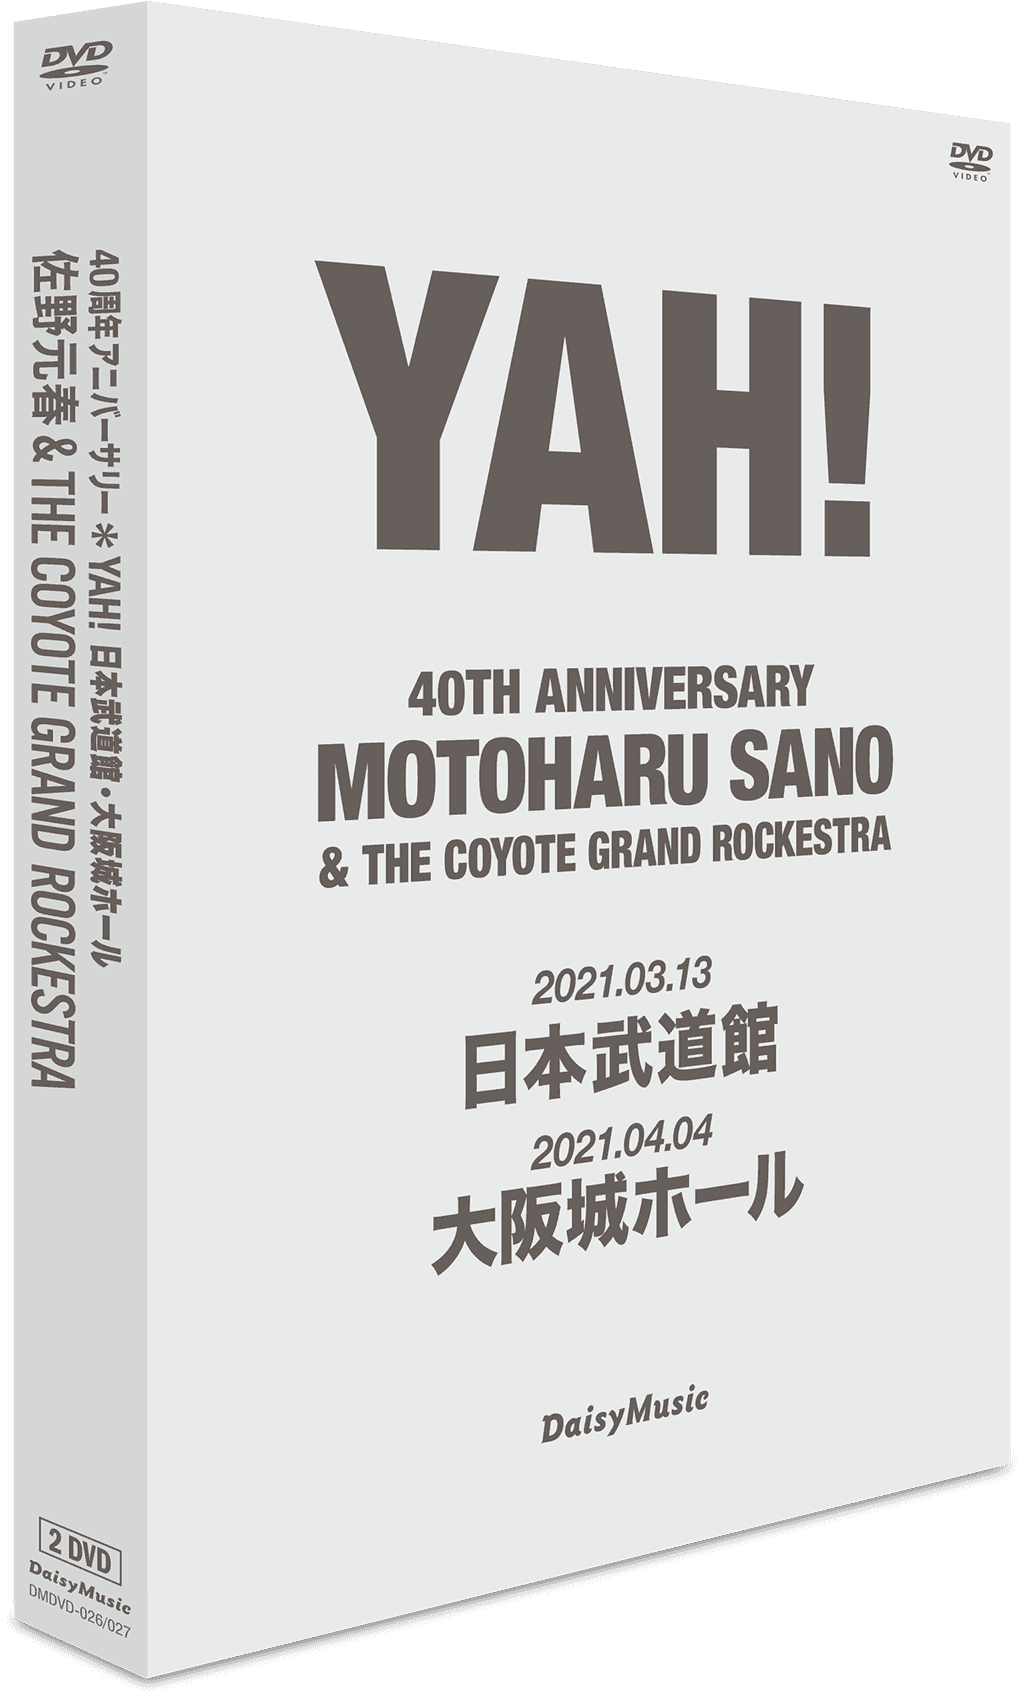 佐野元春 & THE COYOTE GRAND ROCKESTRA 40TH ANNIVERSARY 'YAH!'